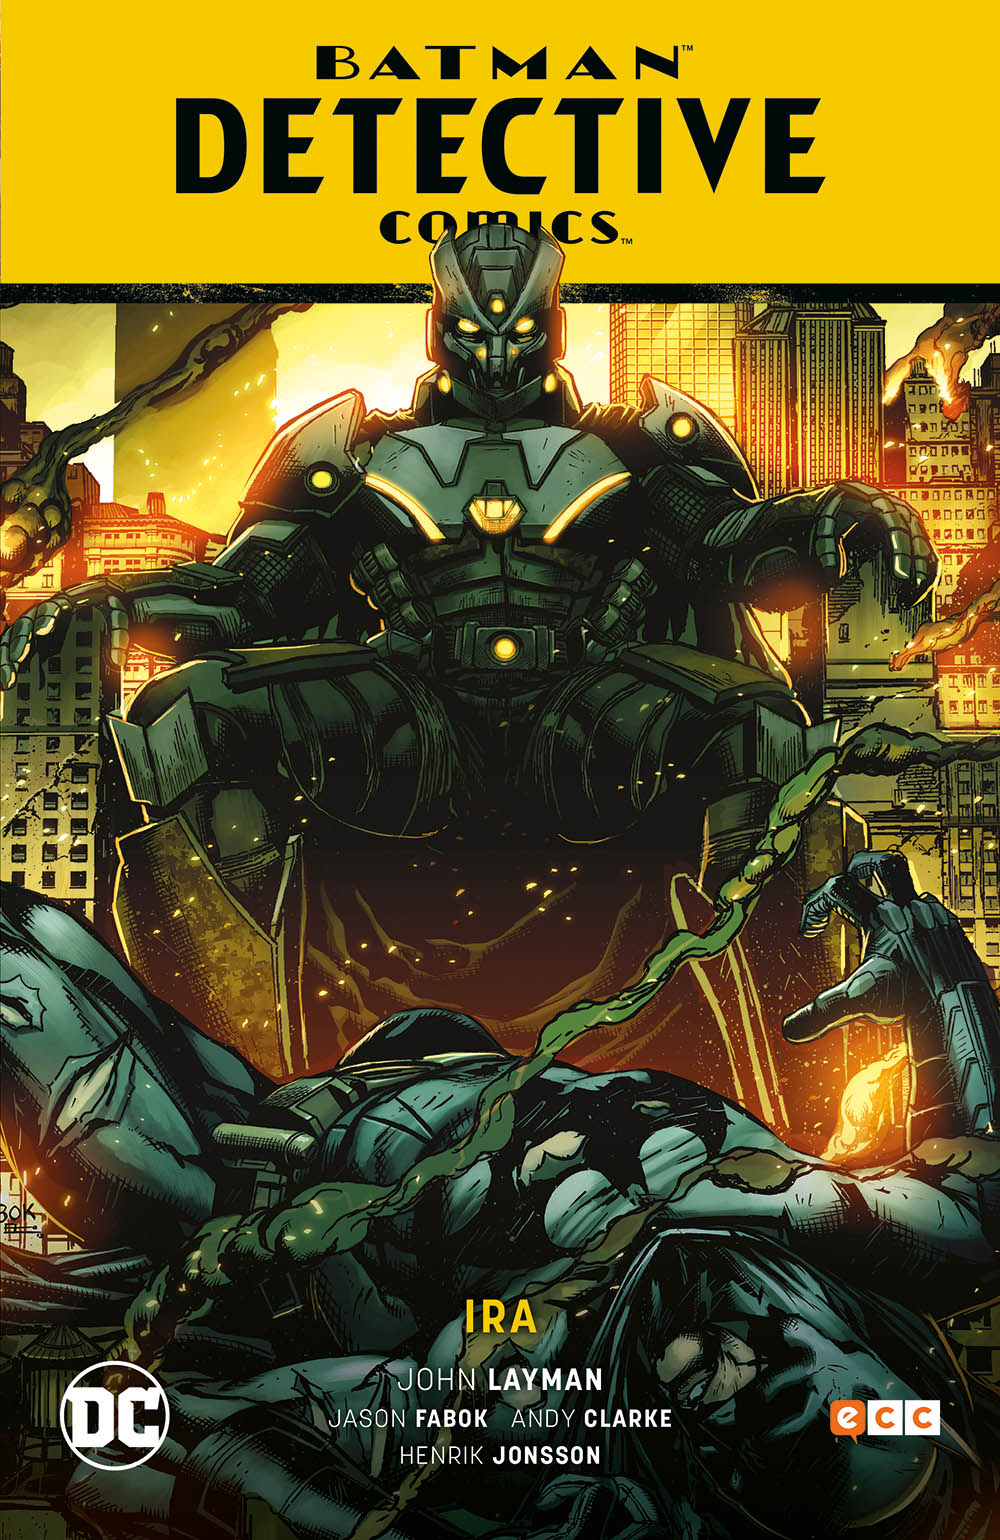 BATMAN: DETECTIVE COMICS VOL. 03 - IRA (BATMAN SAGA - NUEVO UNIVERSO PARTE 3)